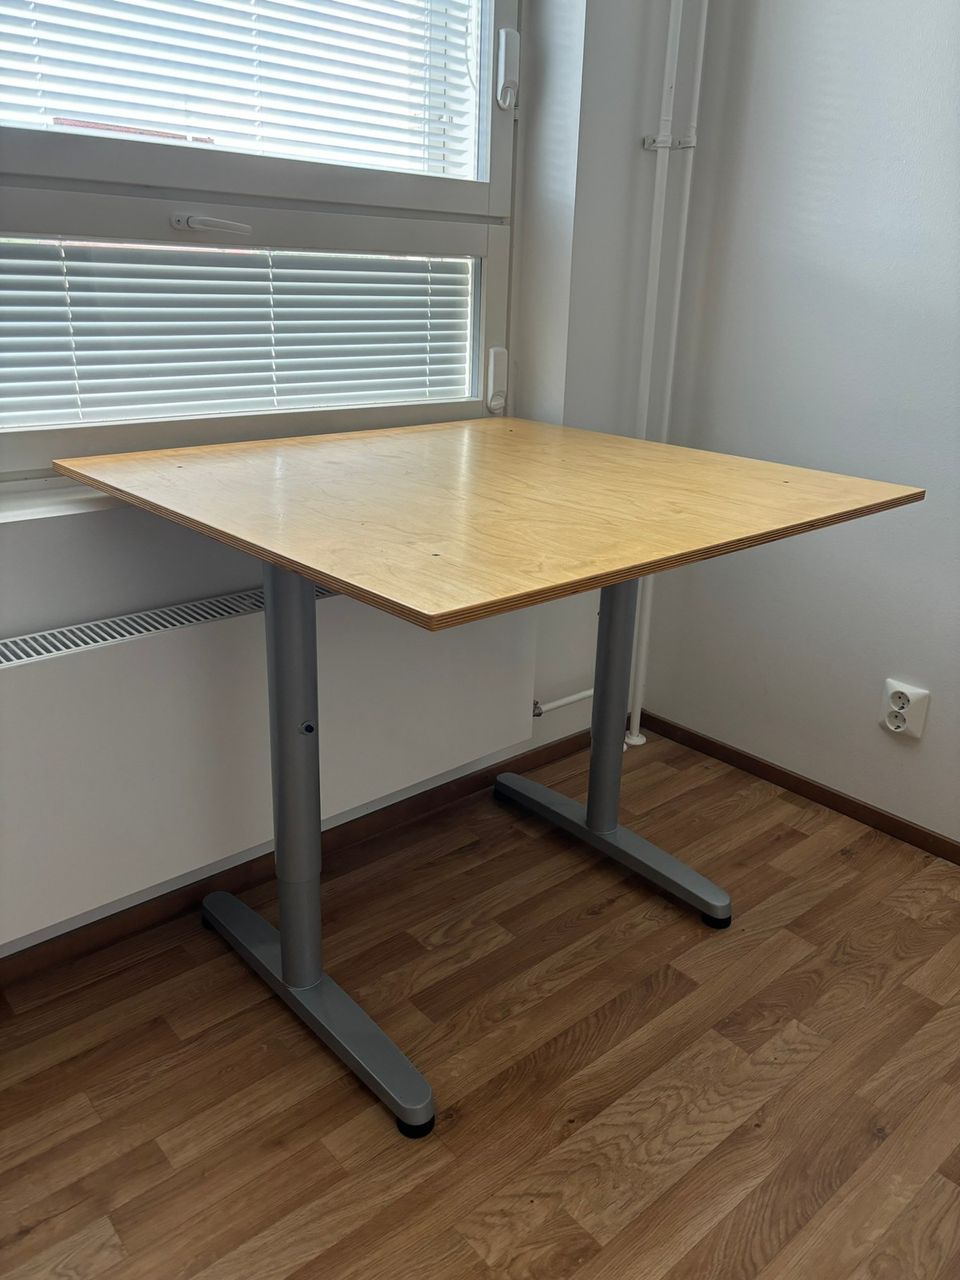 säädettävä pöytä / adjustable table